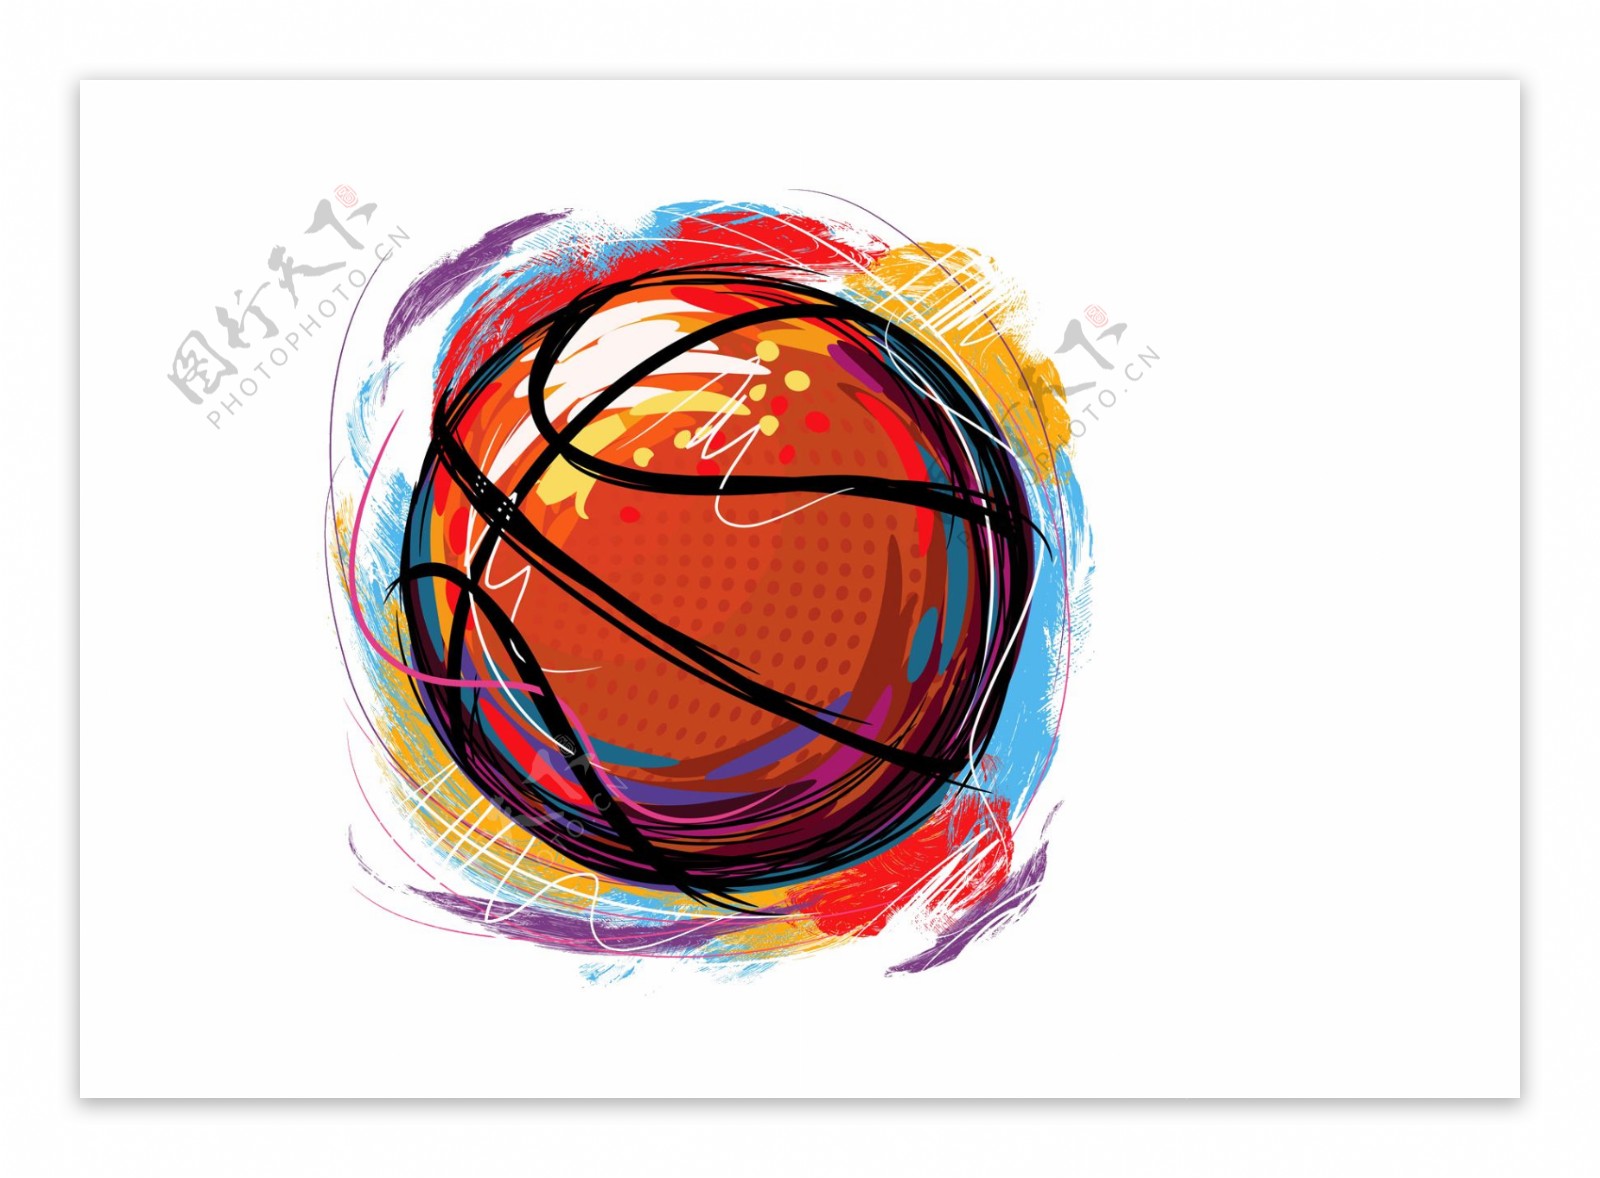 一组国际篮球日图标